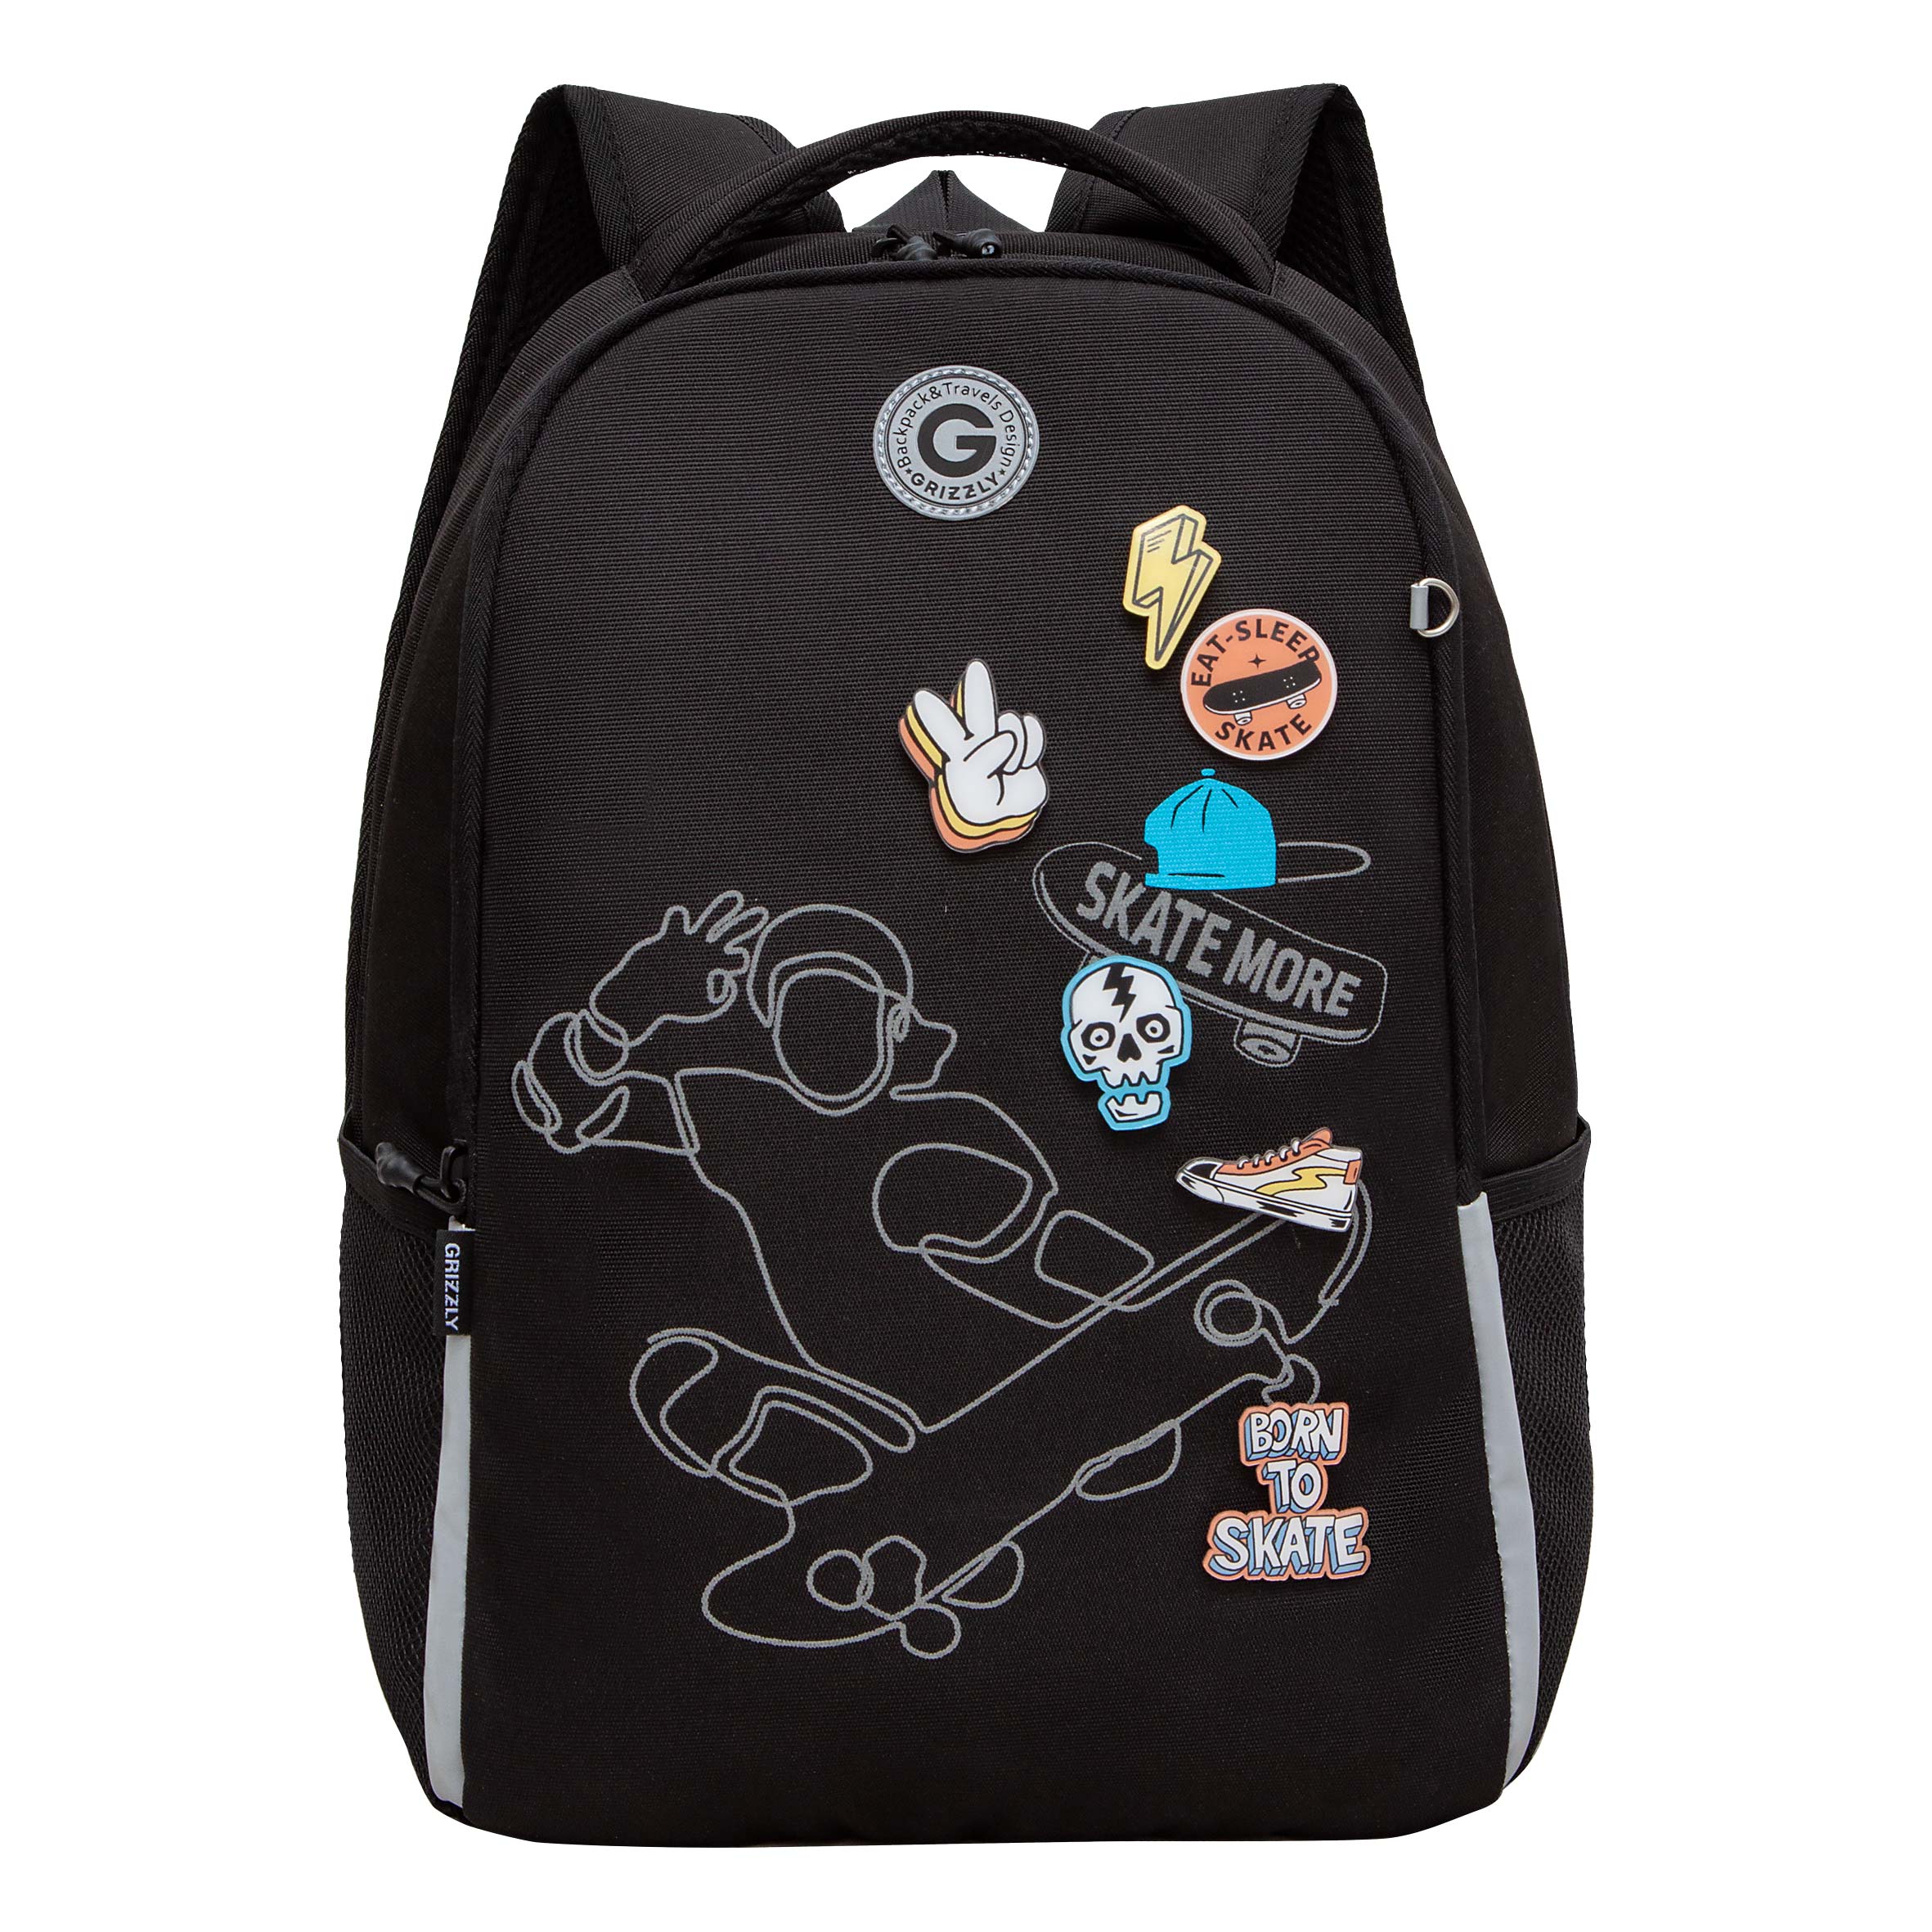 Рюкзак школьный Grizzly Легкий, жесткая спинка, 2 отделения, черный рюкзак школьный grizzly легкий с жесткой спинкой 2 отделения rb 451 5 1